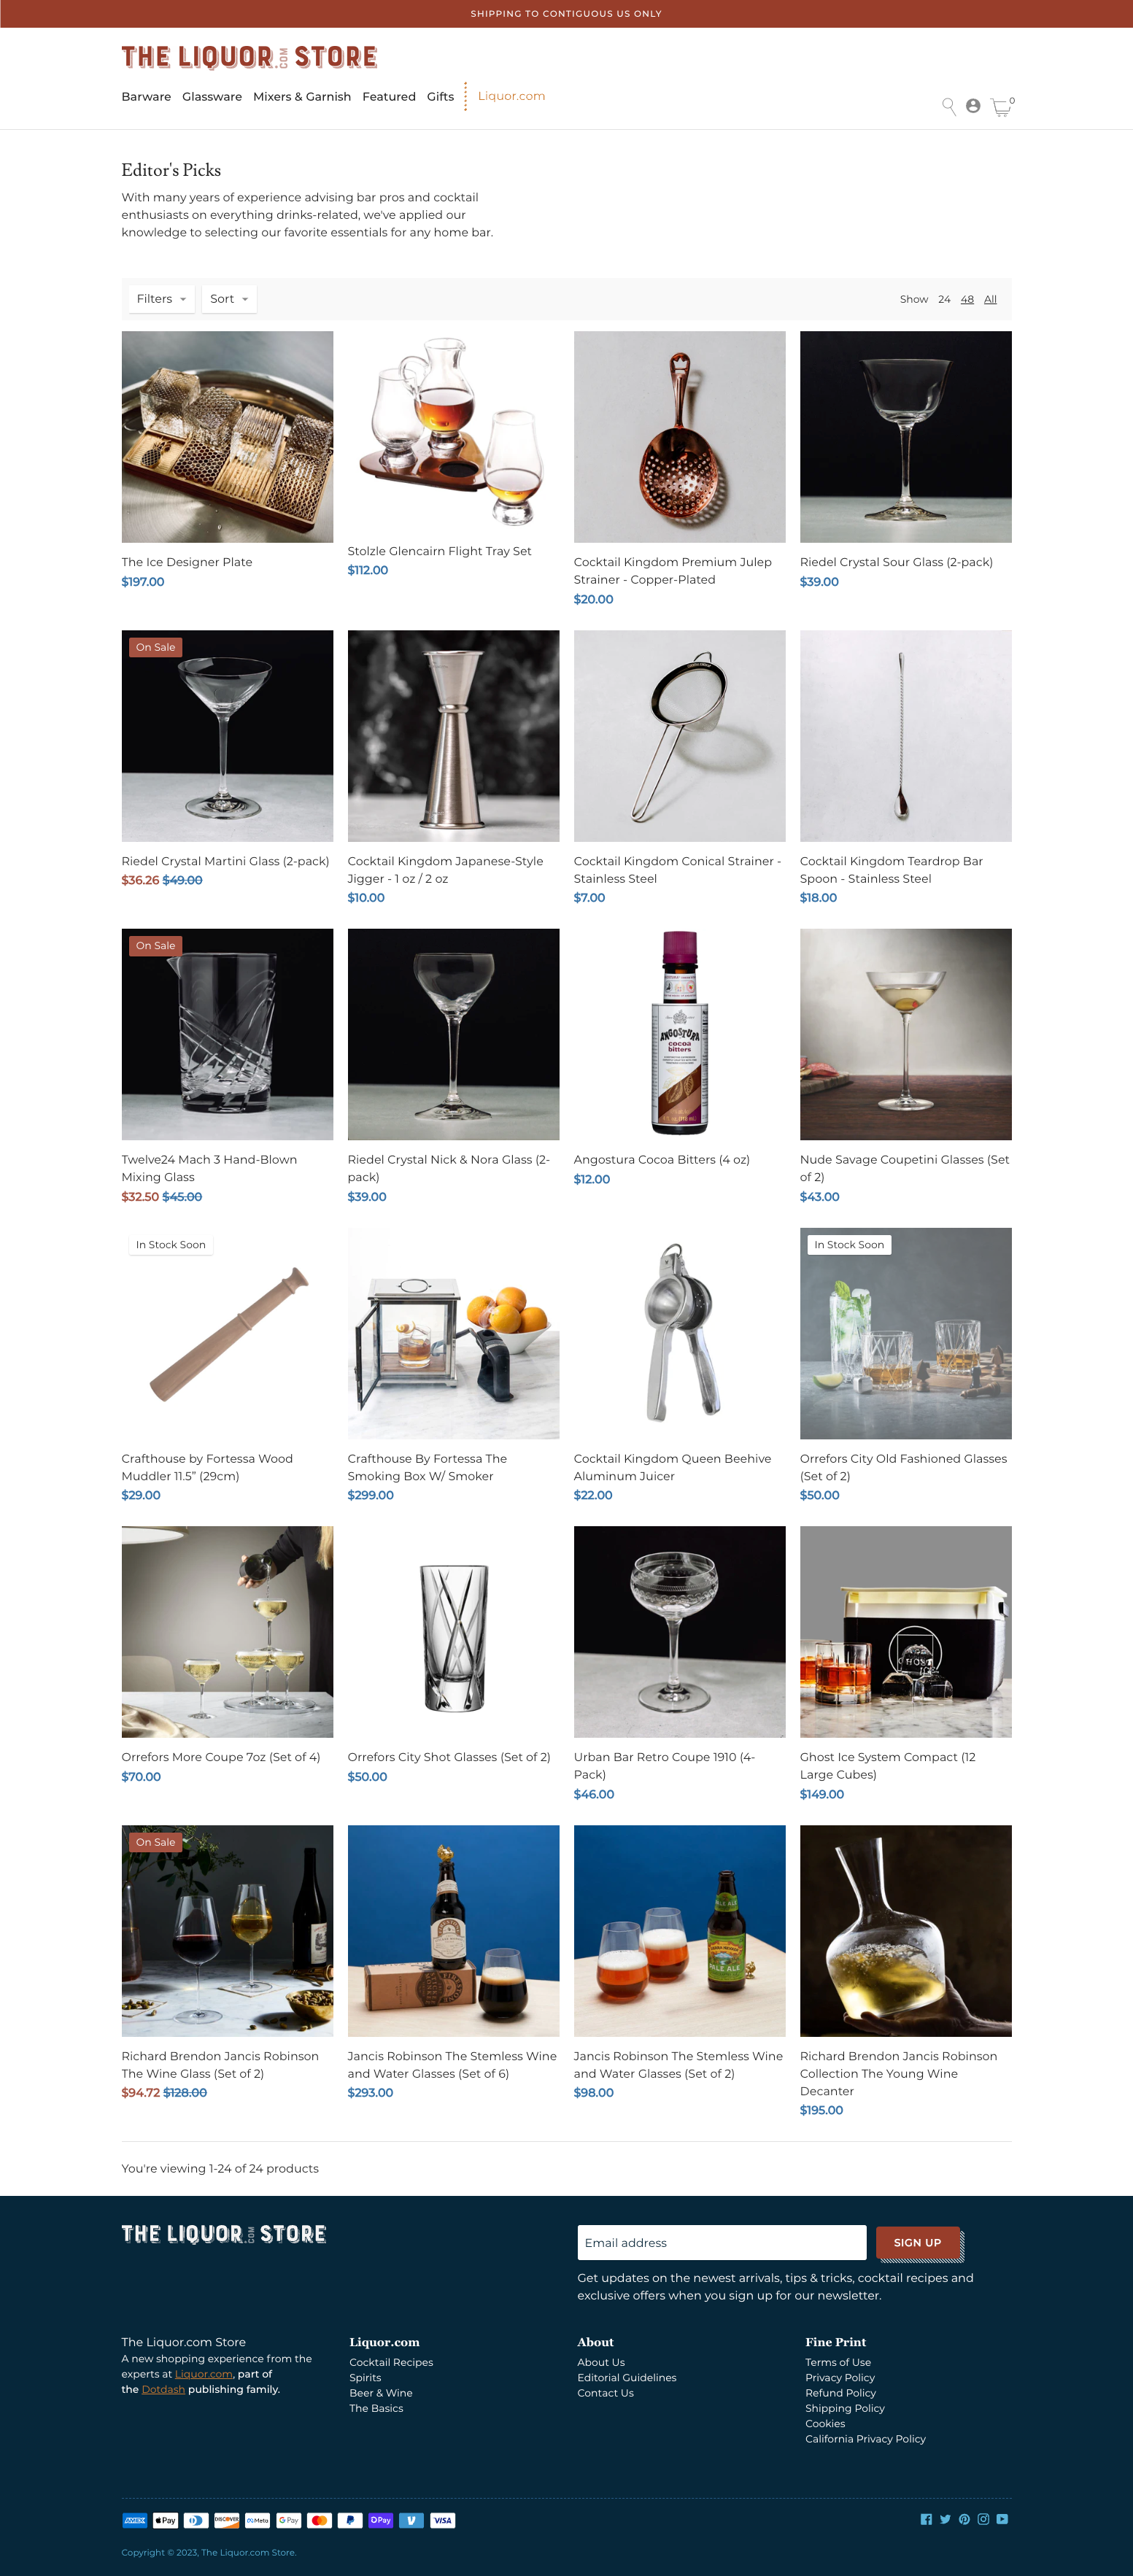 shop.liquor.com product landing page